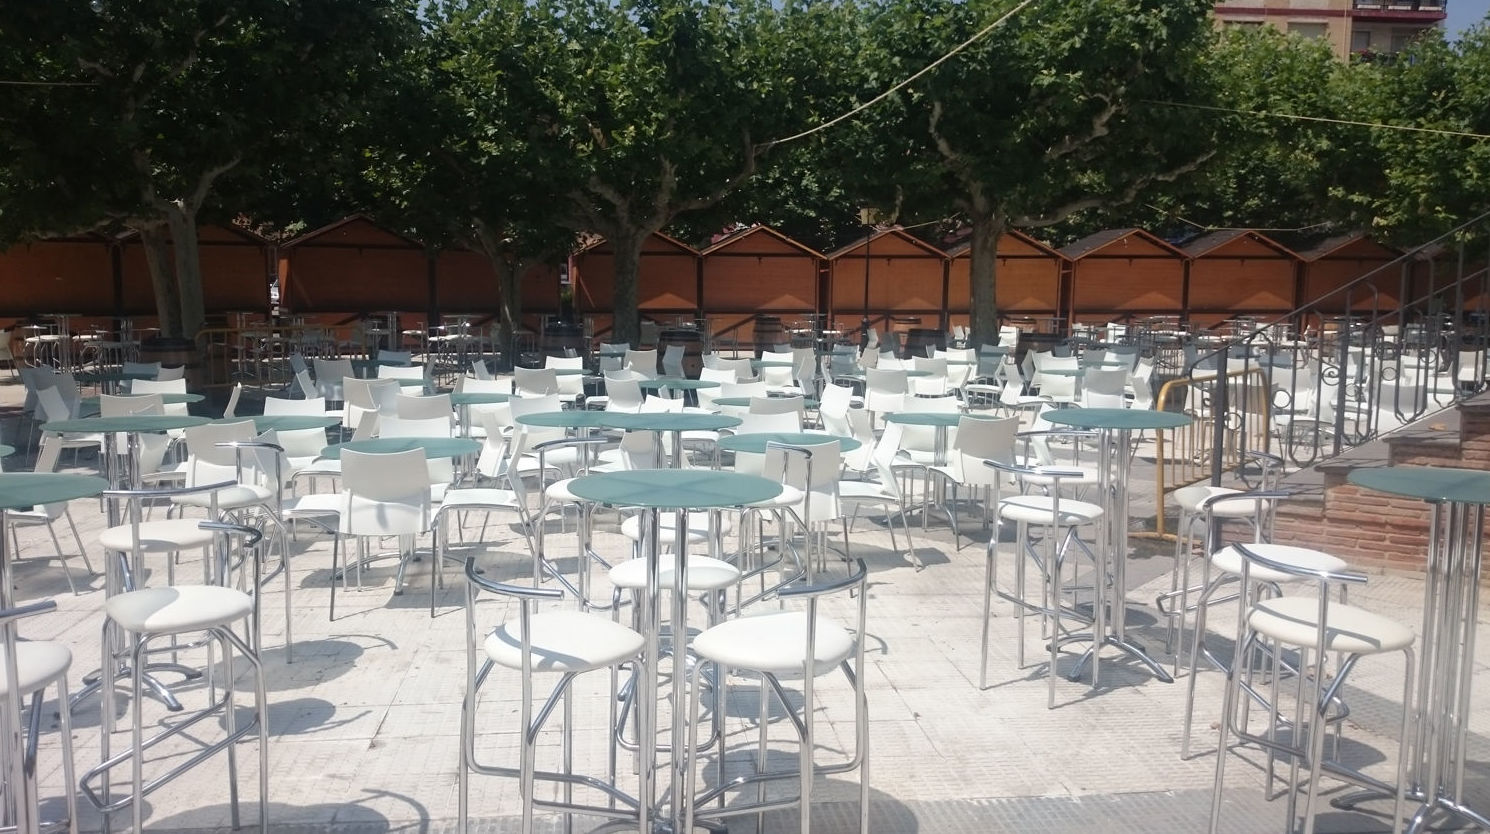 Foto 27 de Alquiler de sillas, mesas y menaje en Zaragoza | Stuhl Ibérica Alquiler de Mobiliario